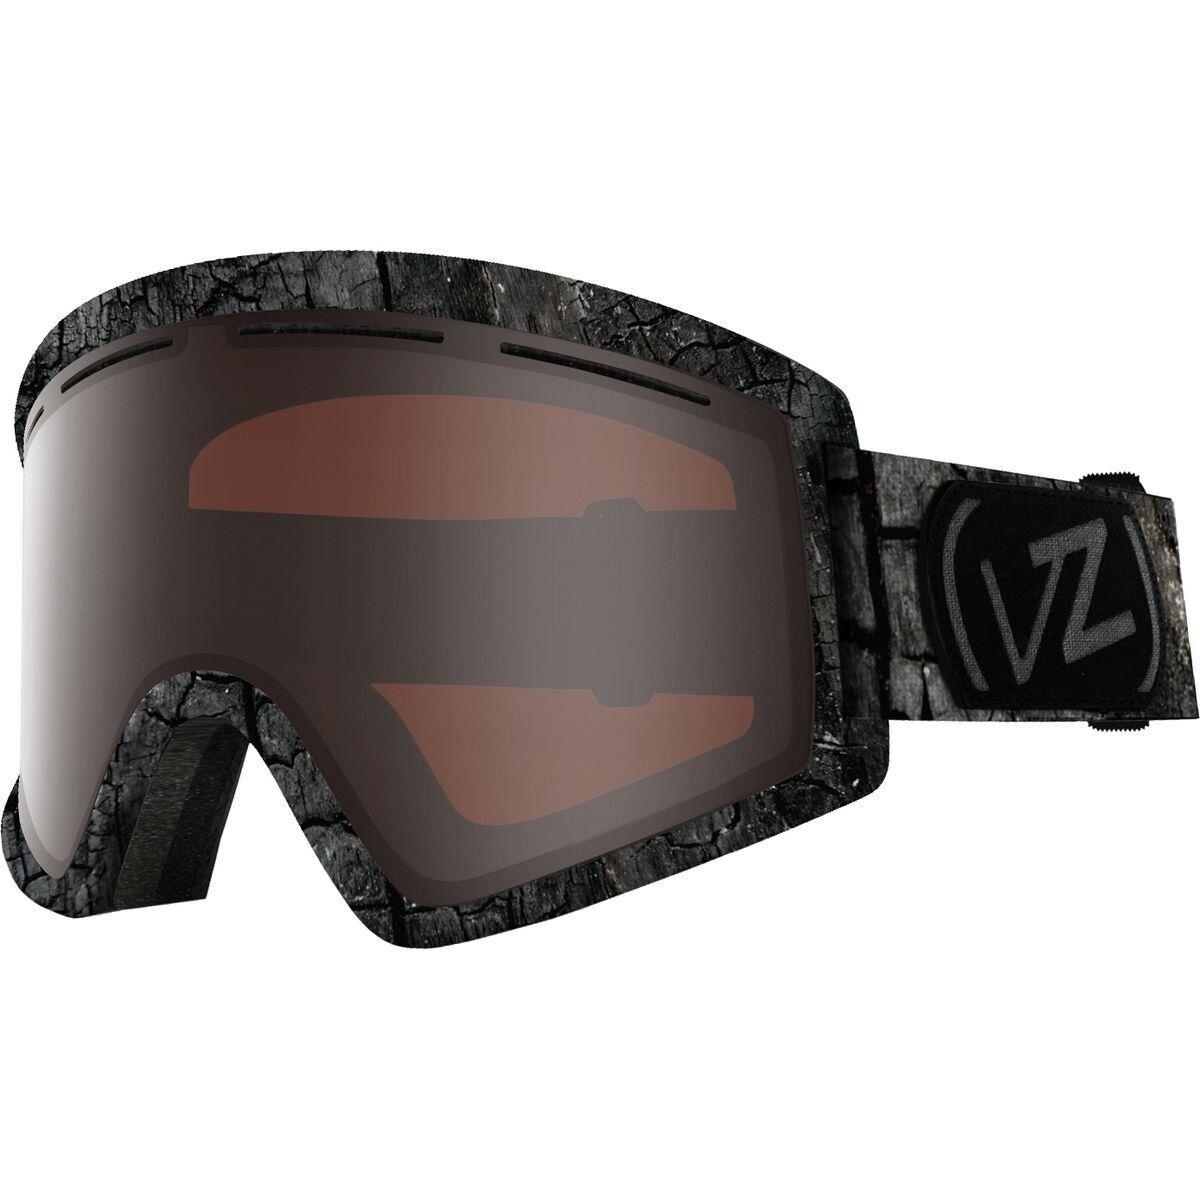 Vonzipper Cleaver Adult Ski / Snowboard Goggles Multiple Colors Halldor/Persimmon Chrome